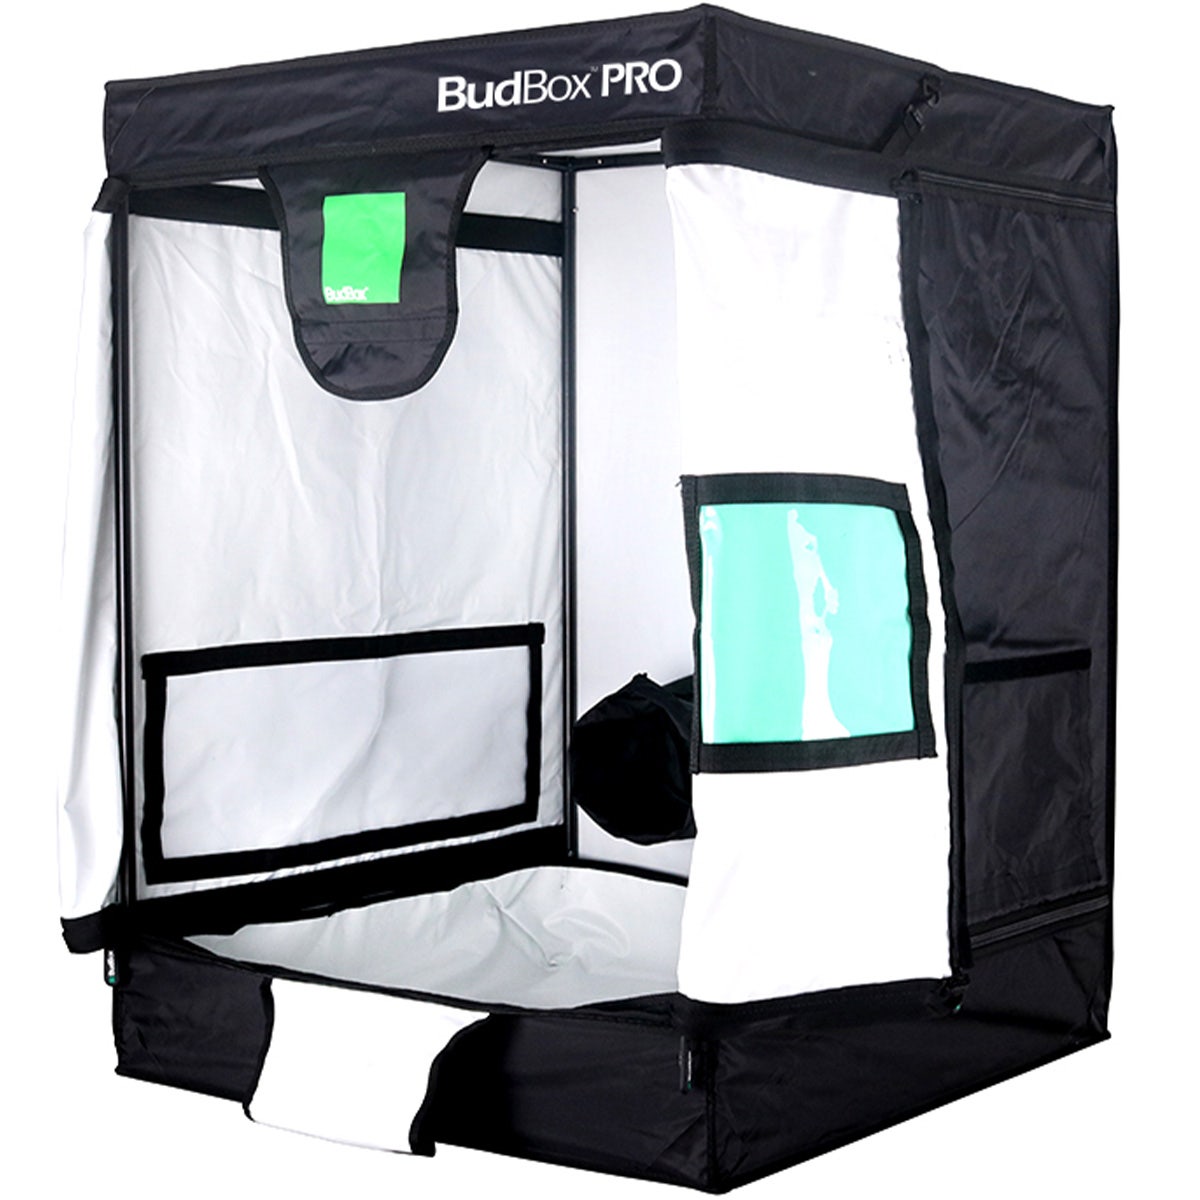 BudBox Pro - 0.75m x 0.75m x 1.0m - Grow Tent